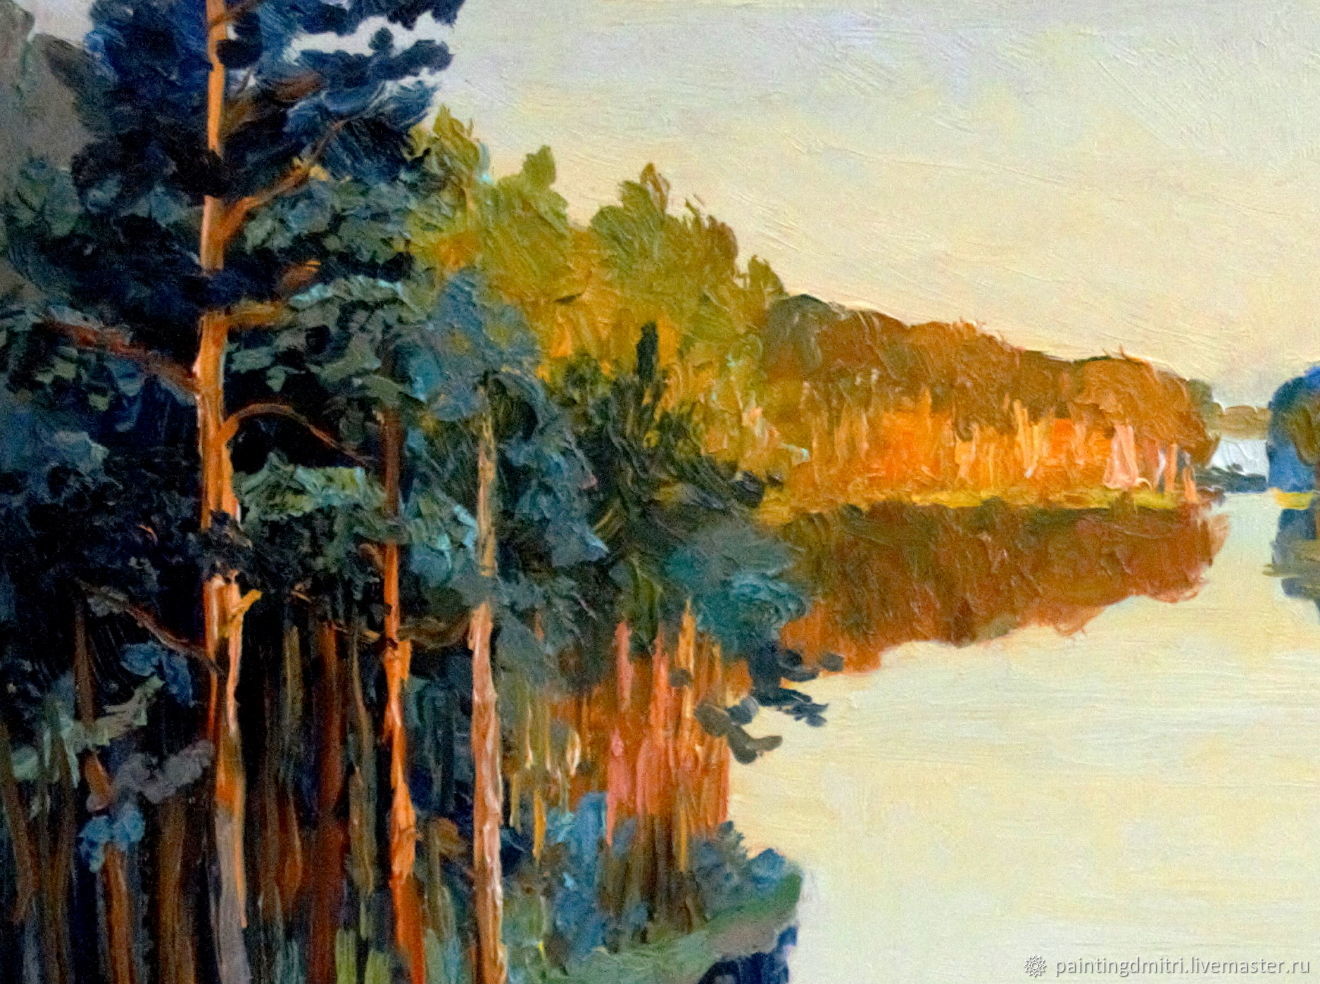 Какие краски использует художник для выражения чувств в картине лесистый берег